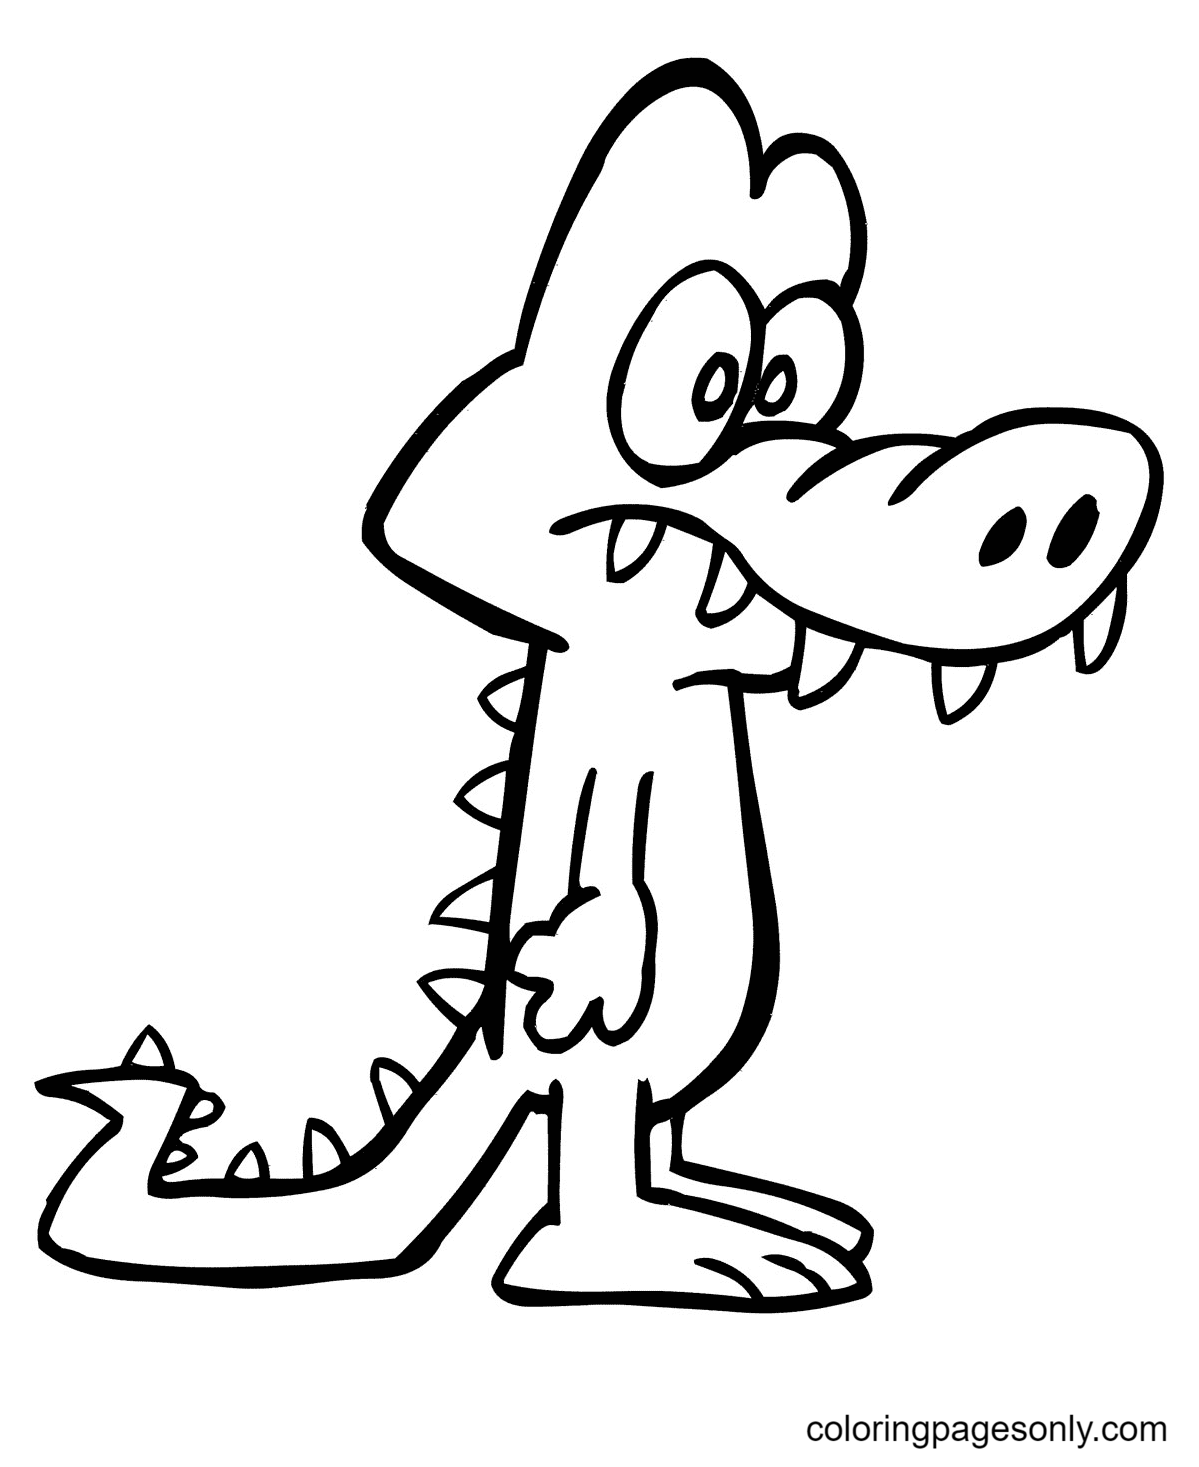 Забавный мультяшный аллигатор из мультфильма "Аллигатор"